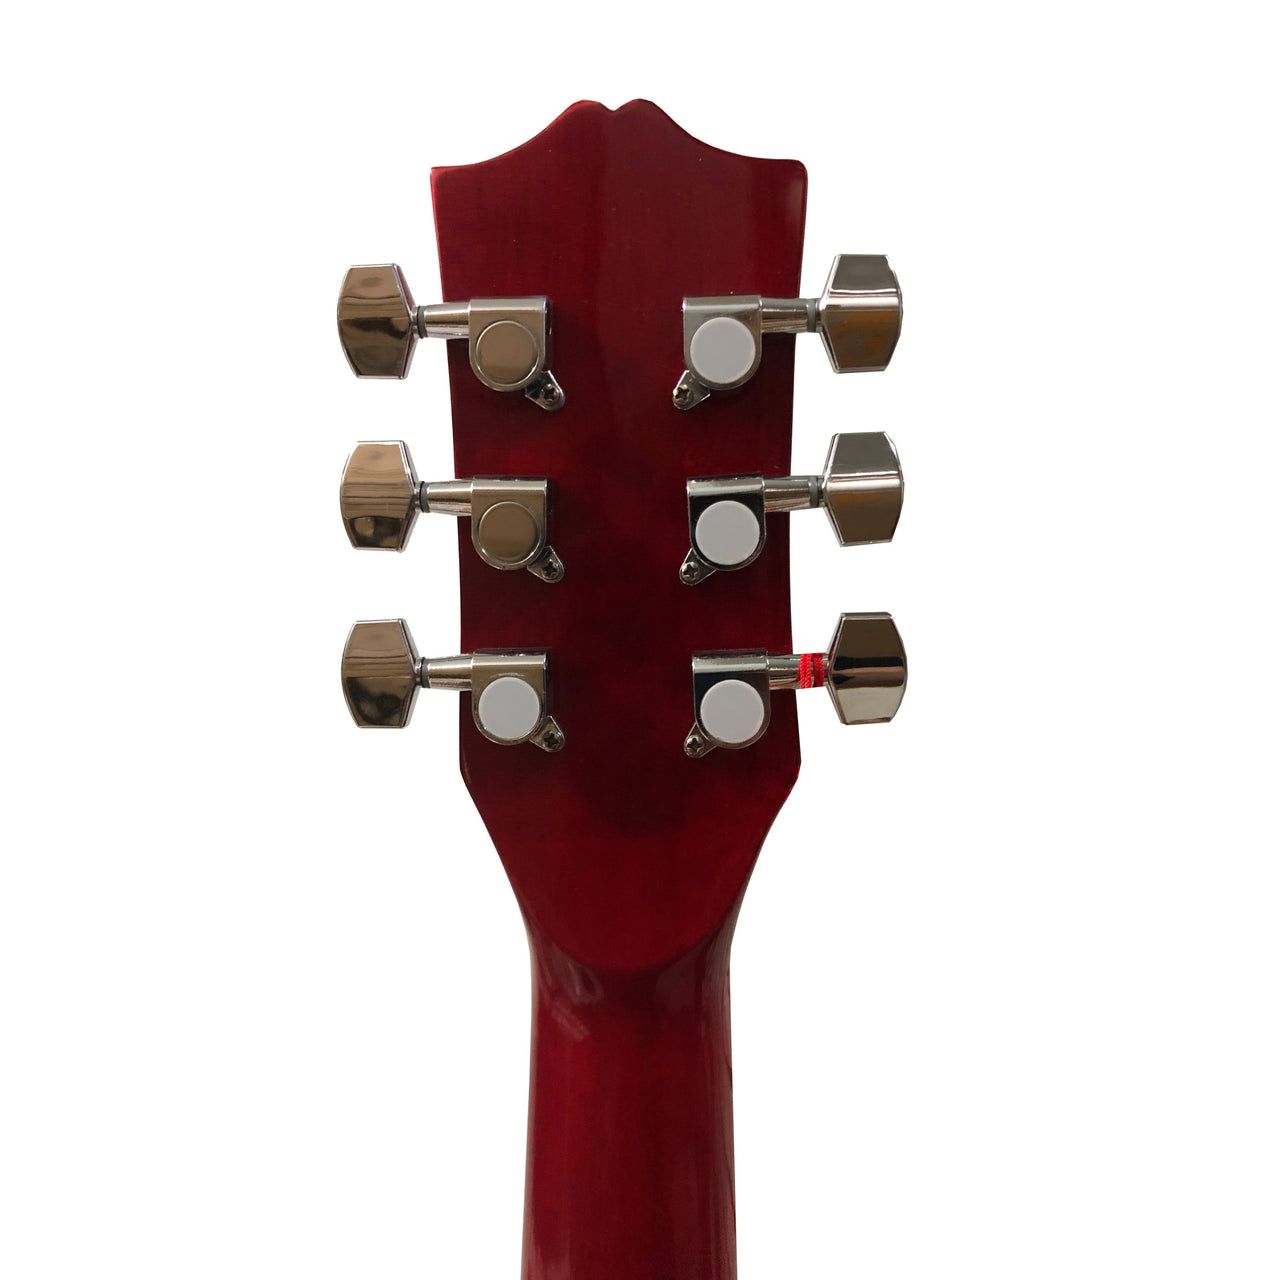 Guitarra Electroacustica Mc Cartney Cg-851-eq-rd Cuerdas De Acero Rojo